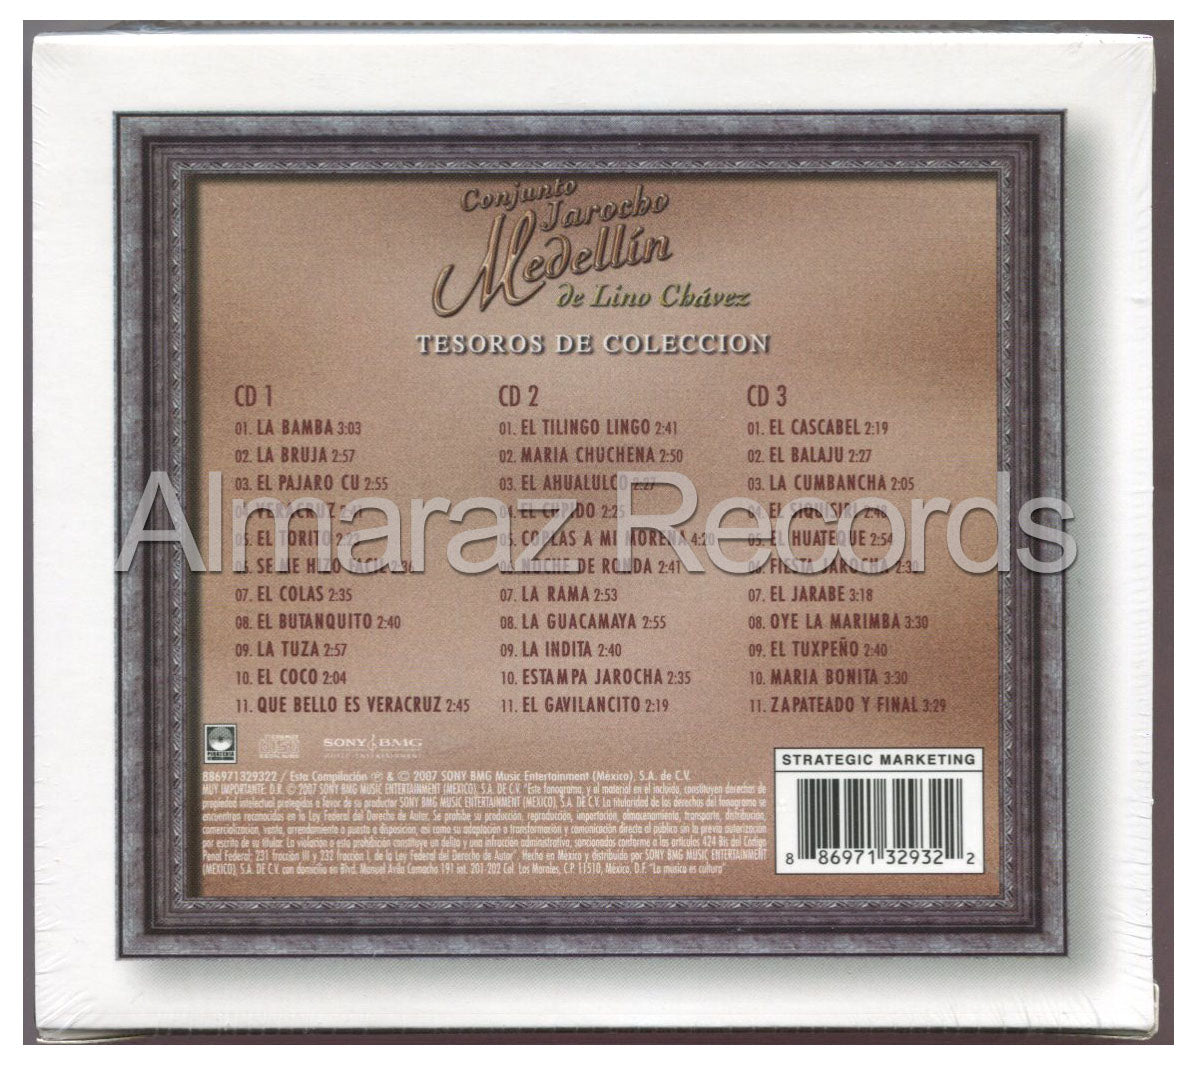 Conjunto Jarocho Medellin Tesoros De Coleccion 3CD